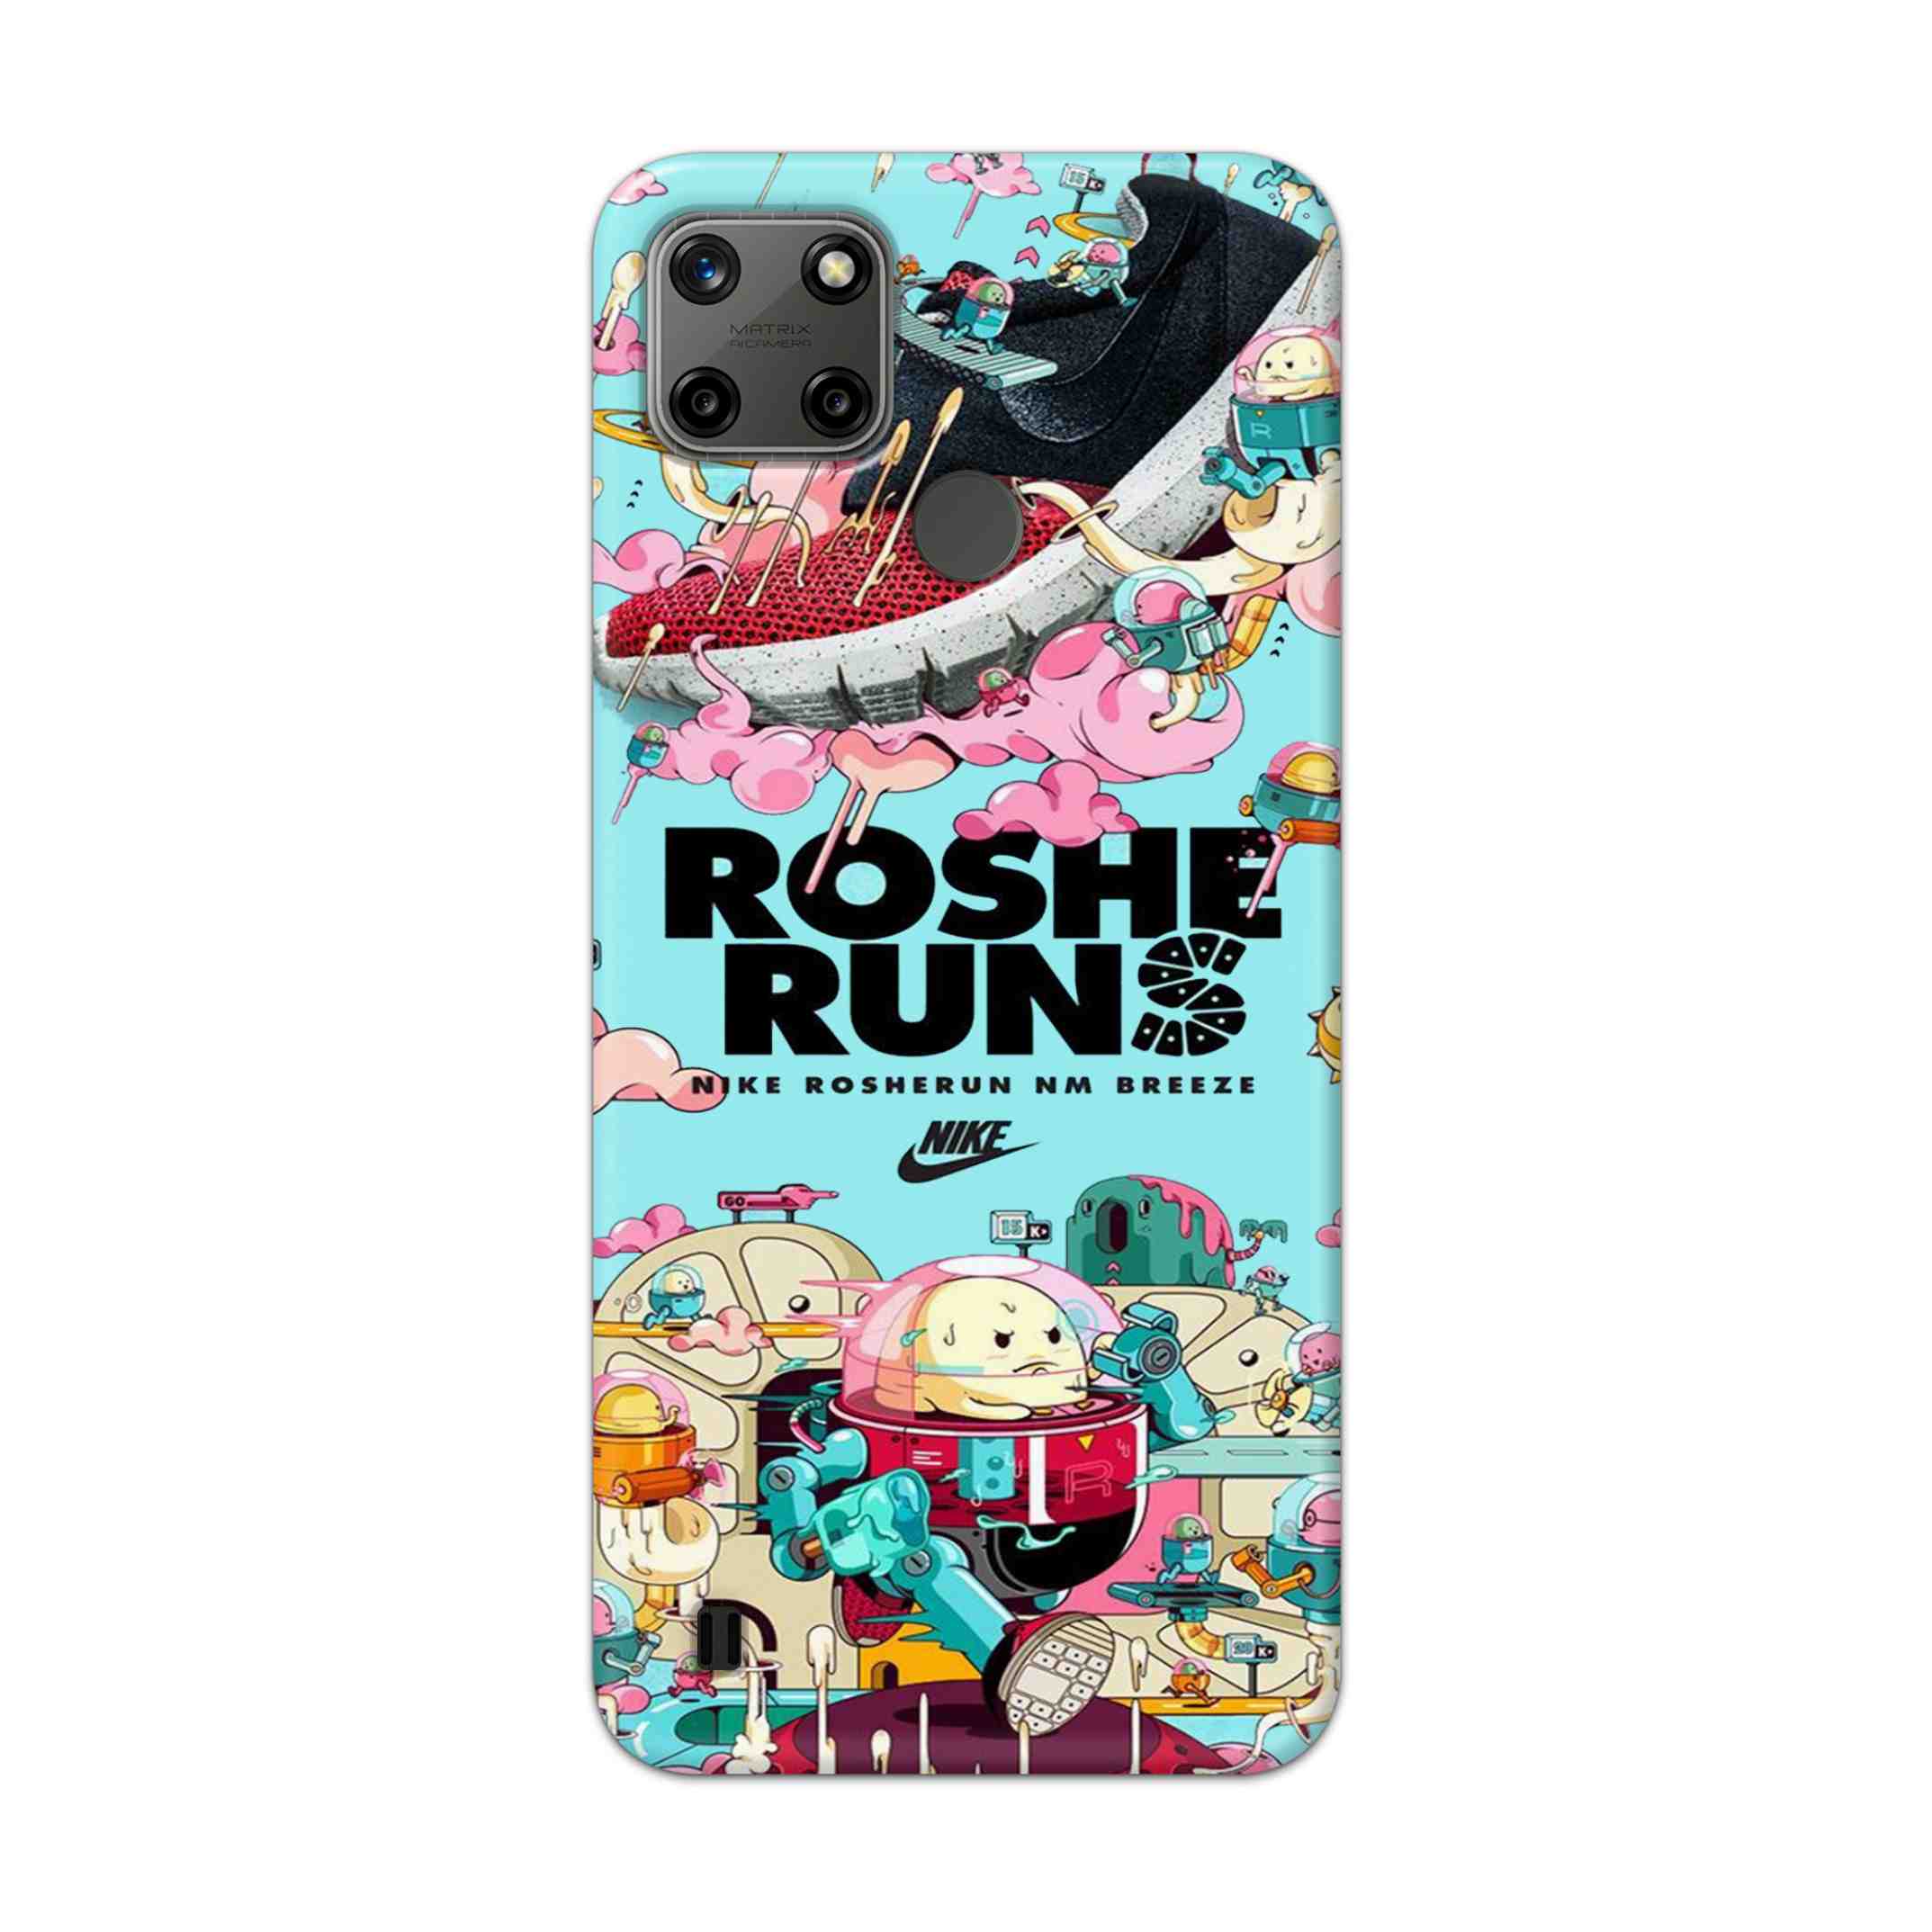 Buy Roshe Runs Hard Back Mobile Phone Case Cover For Realme C25Y Online